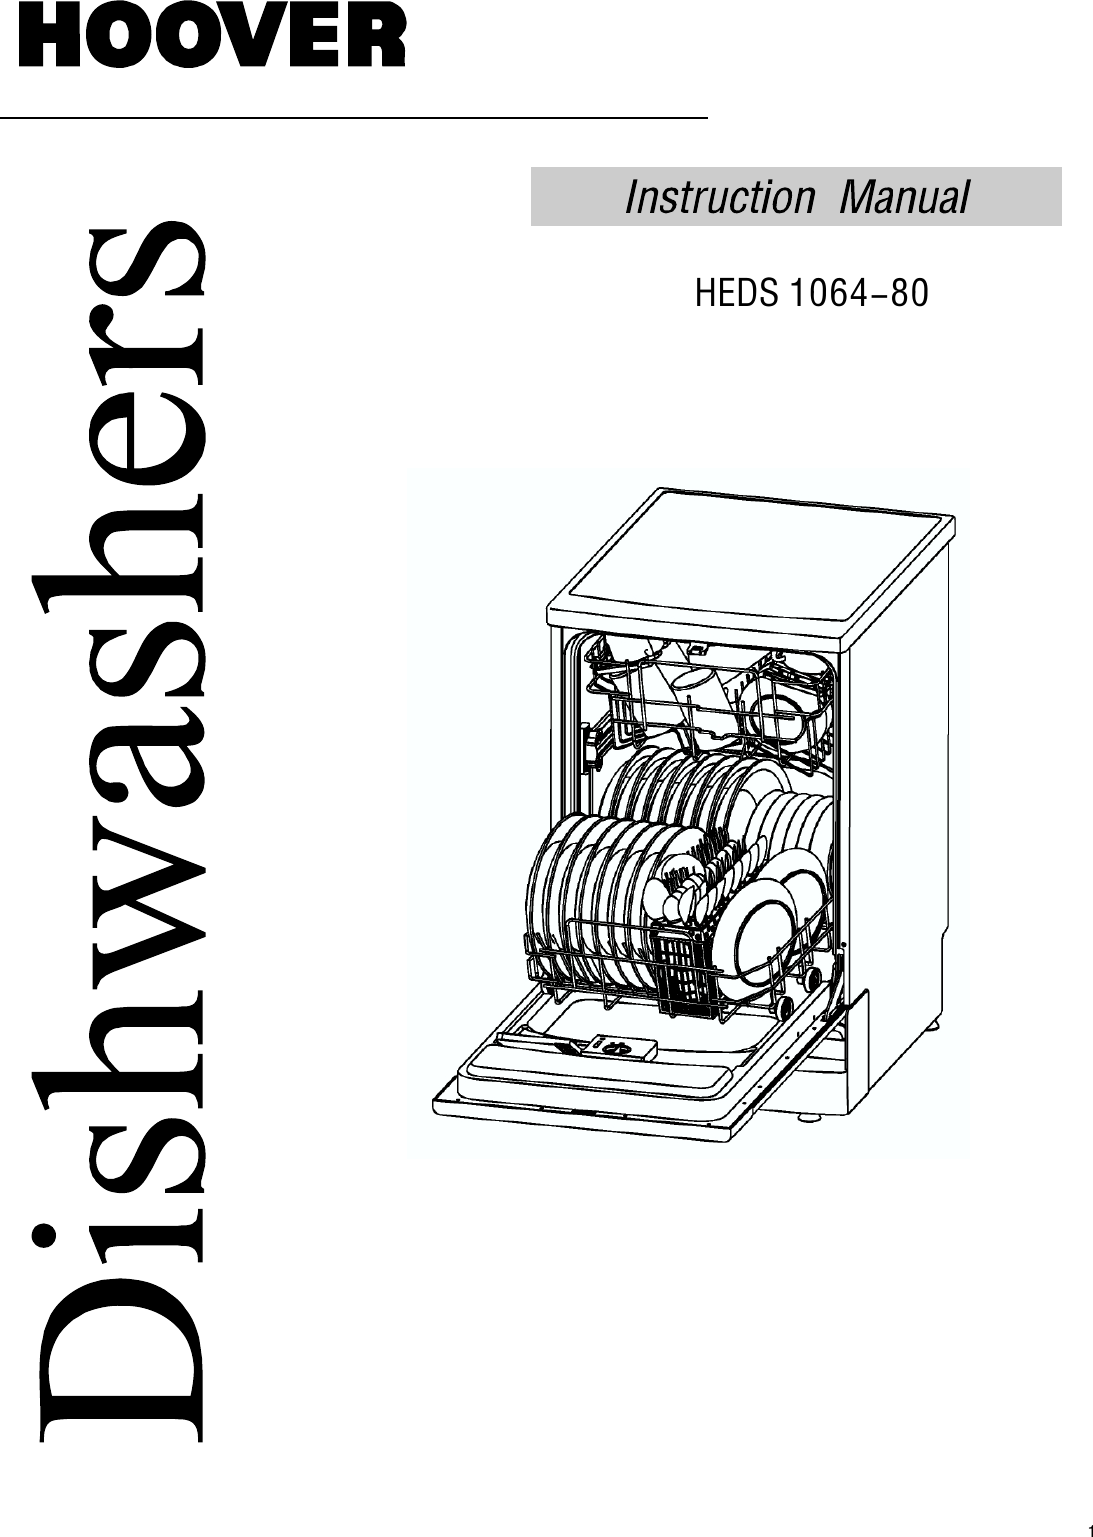 hoover-dishwasher-nextra-heds-1064-instruction-manual-product-code